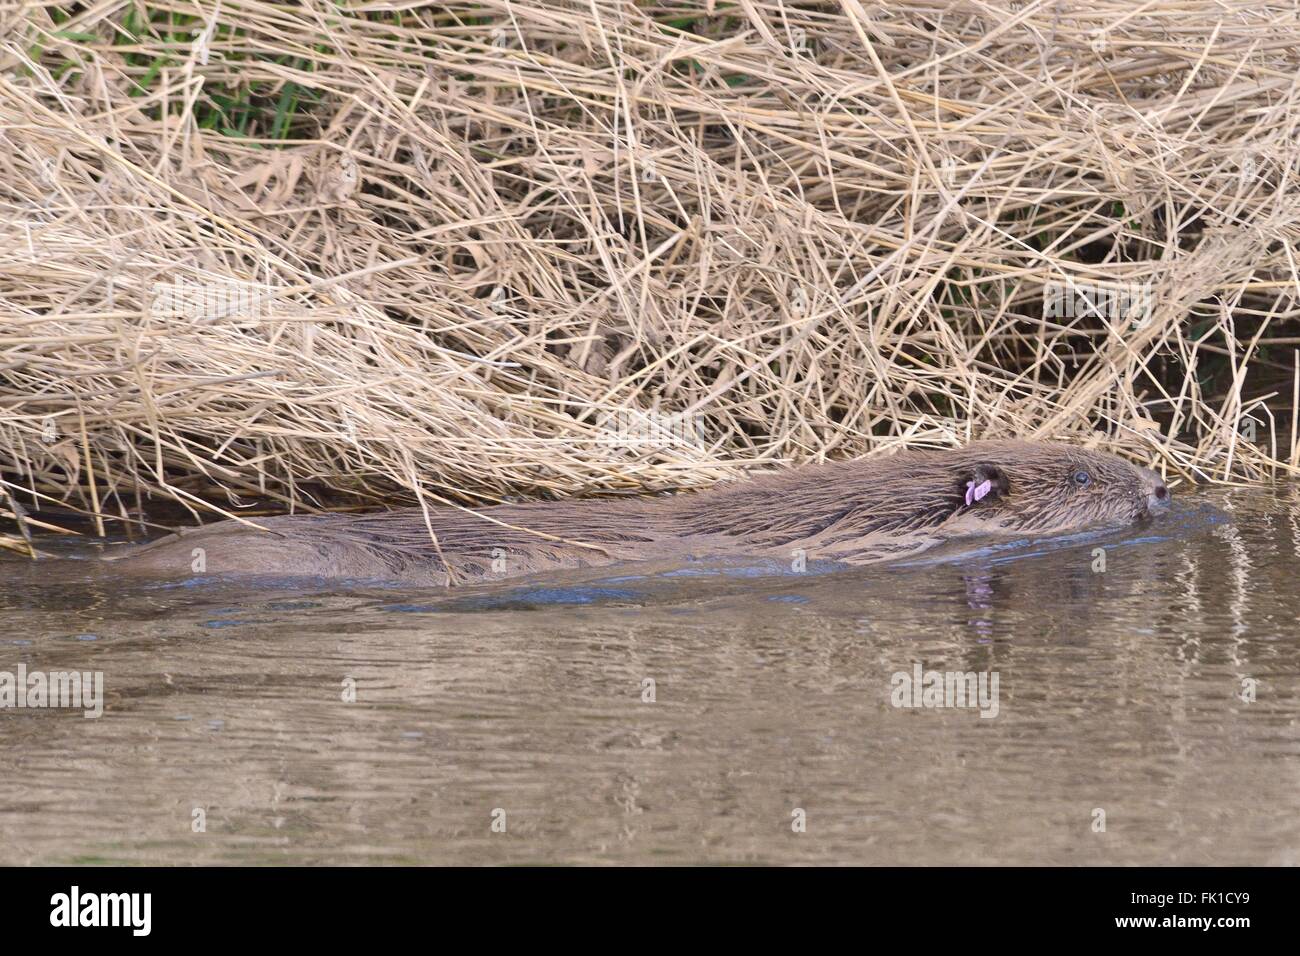 Le castor d'Eurasie (Castor fiber) baignade dans la rivière Otter après contrôle pour les maladies et renvoyée dans son territoire. Banque D'Images